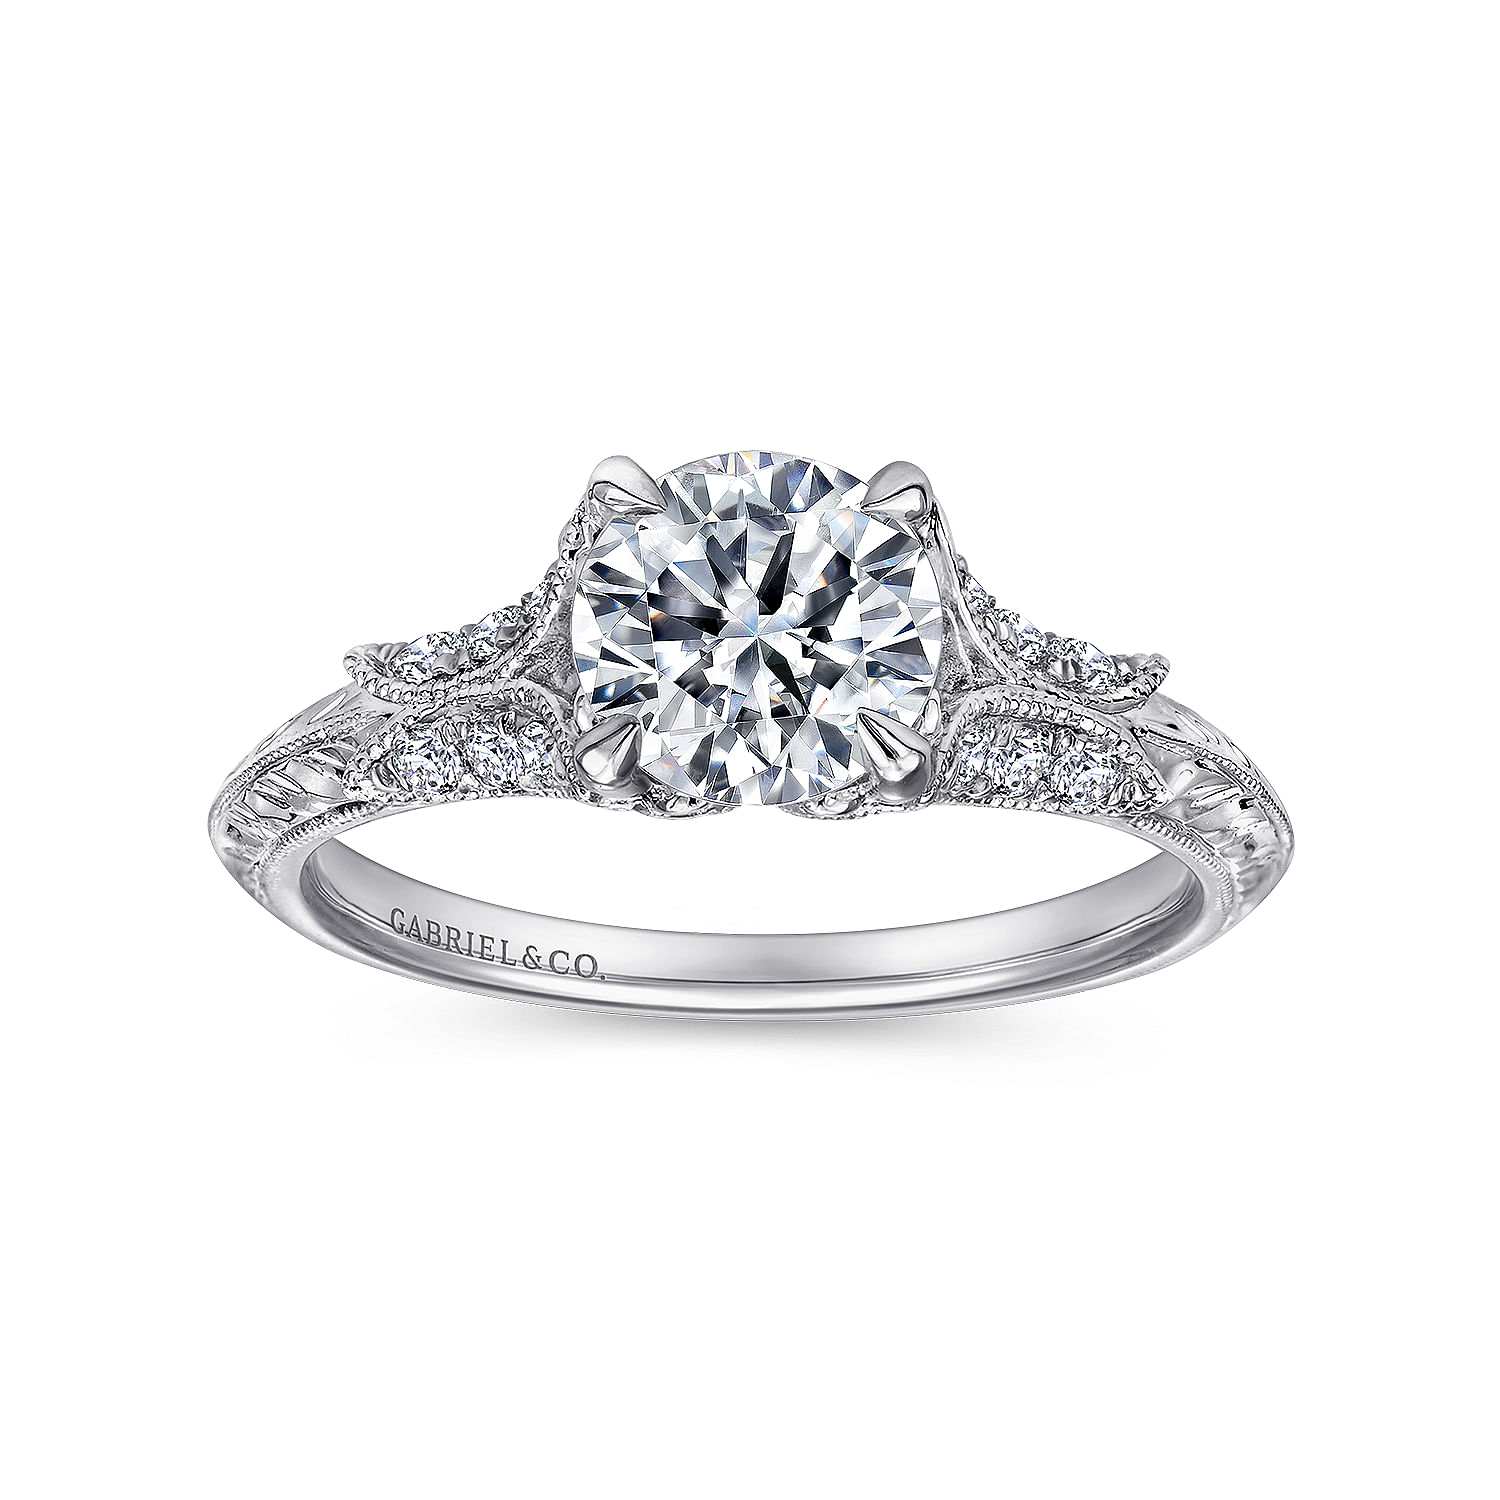 Vintage Inspired 18K White Gold Round Split Shank Diamond Engagement Ring